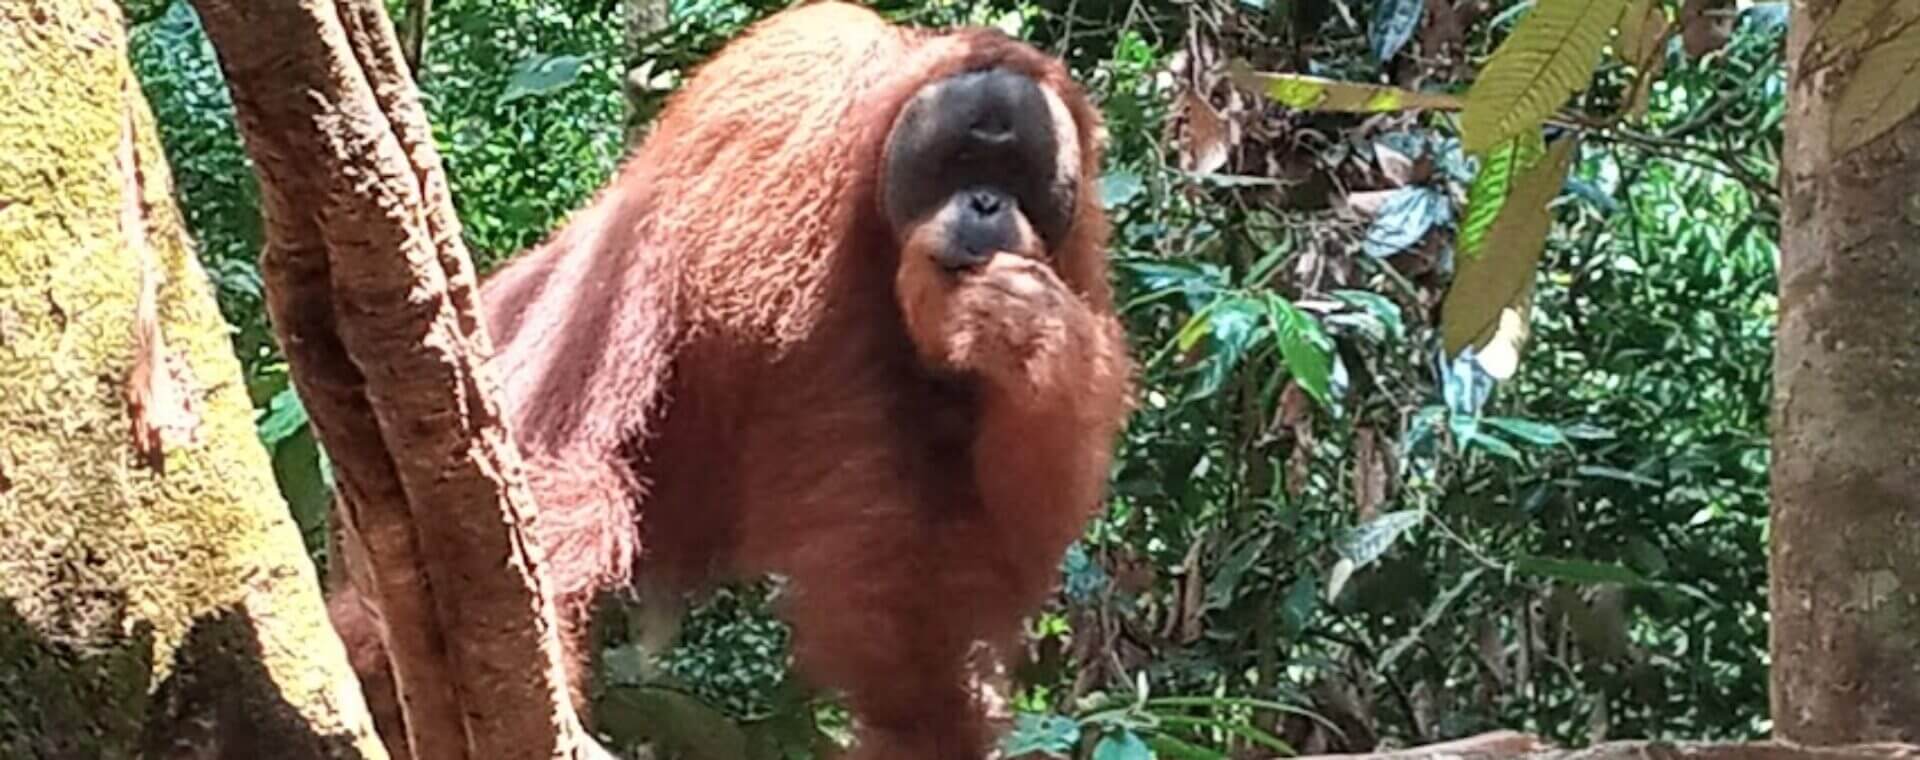 sumatra orangutan